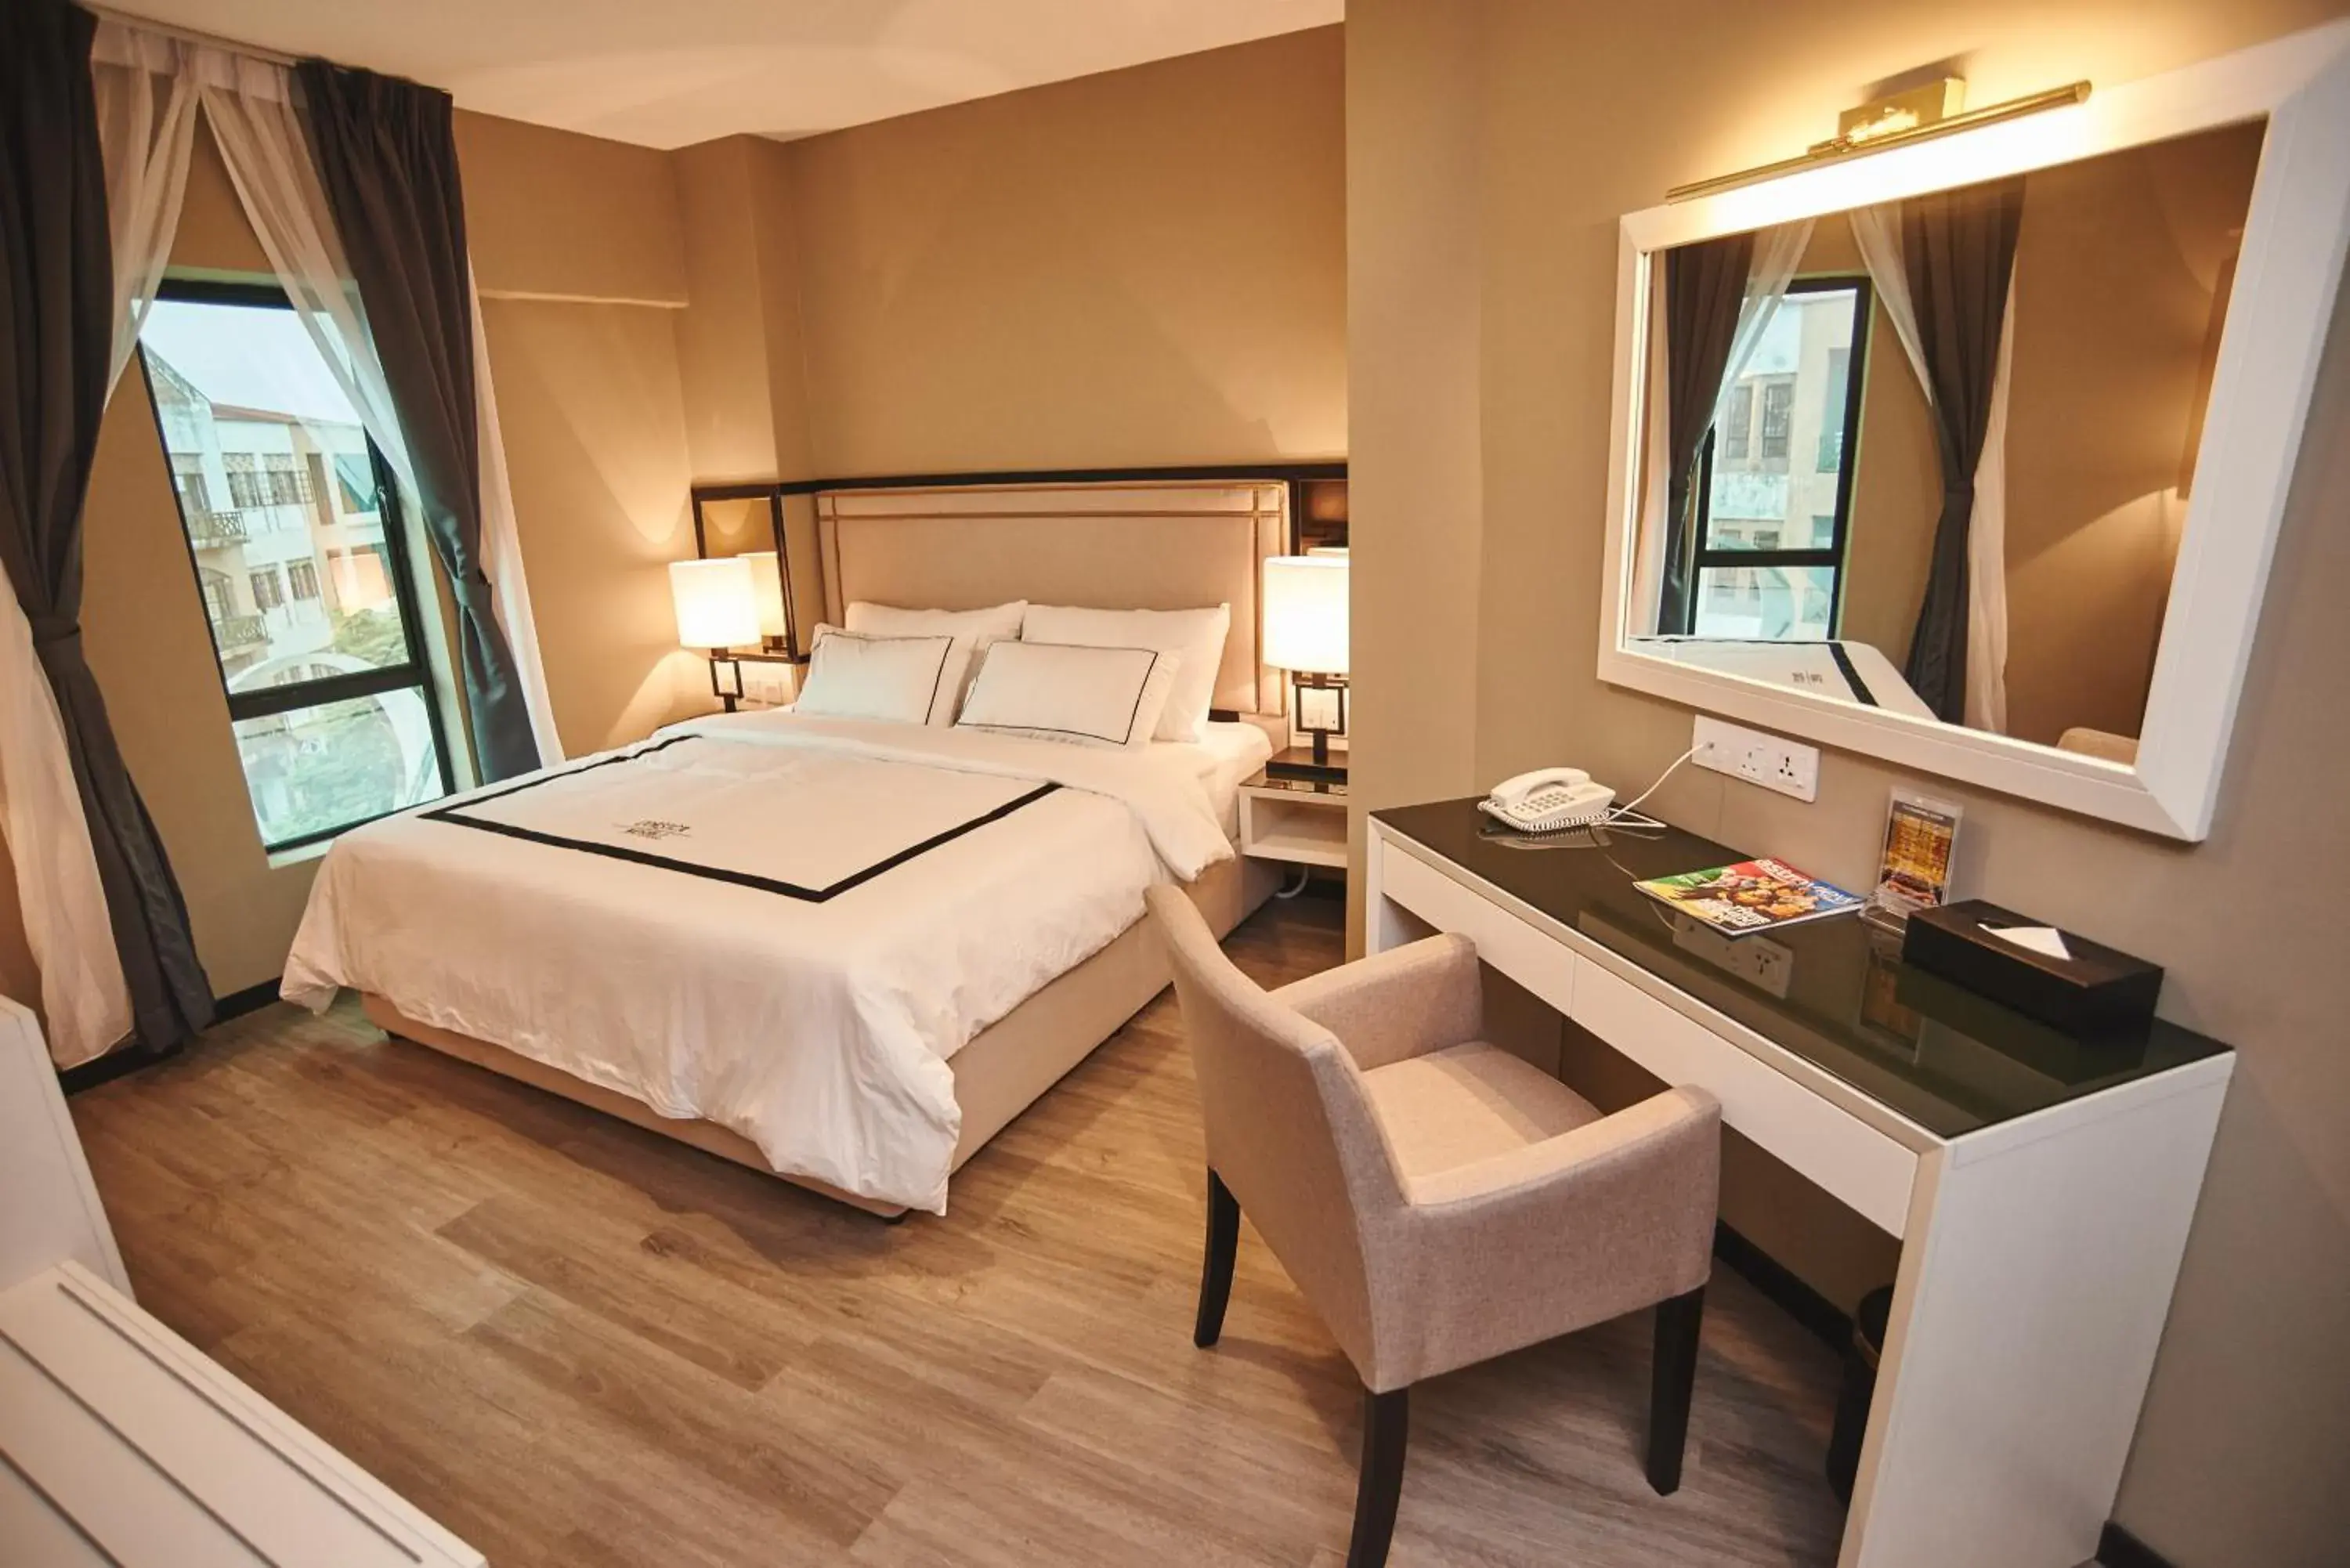 Bedroom, Room Photo in Corsica Hotel